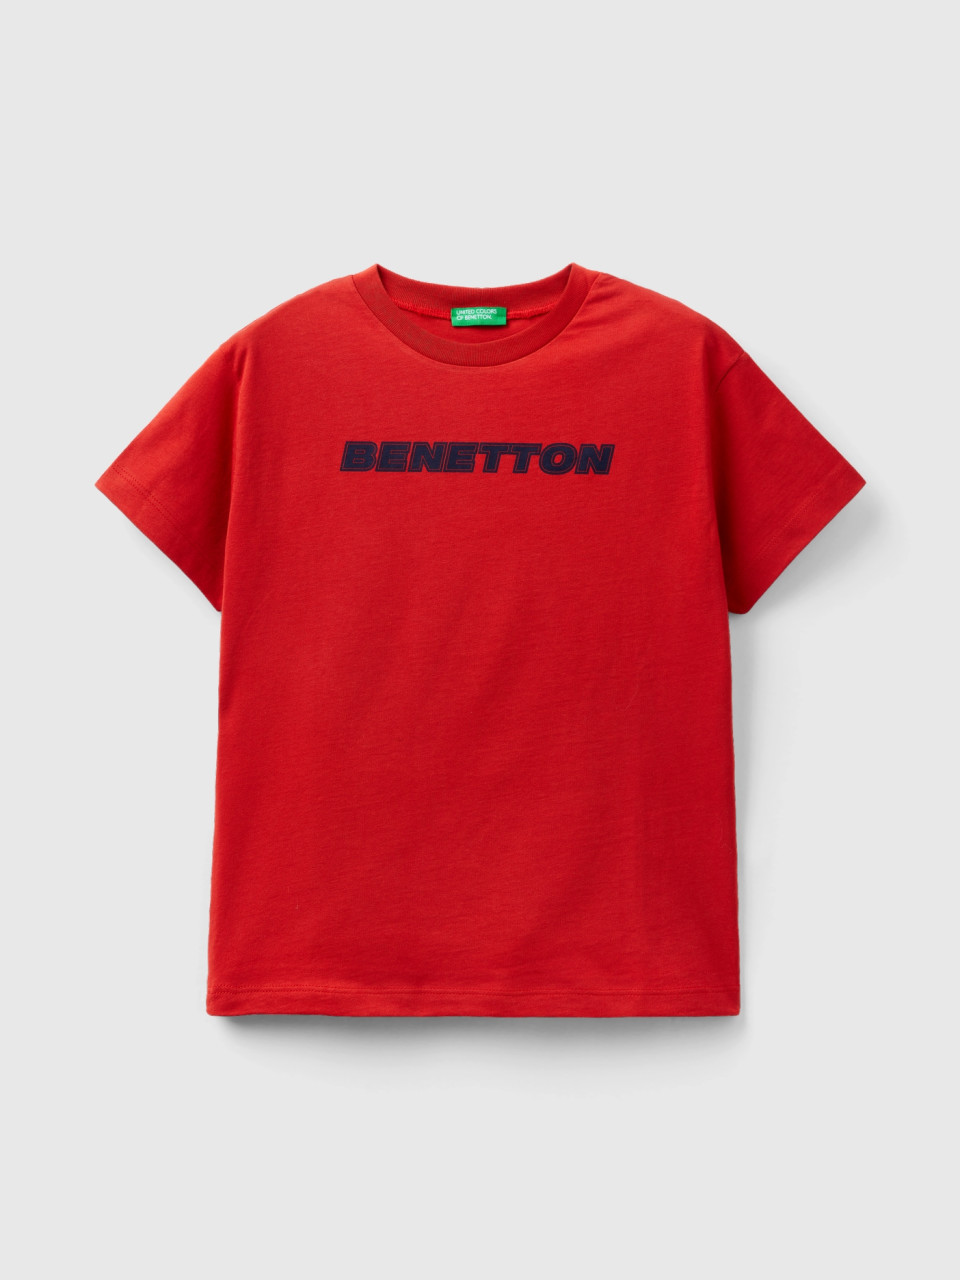 Benetton, Camiseta De 100 % Algodón Con Logotipo, Rojo Teja, Niños